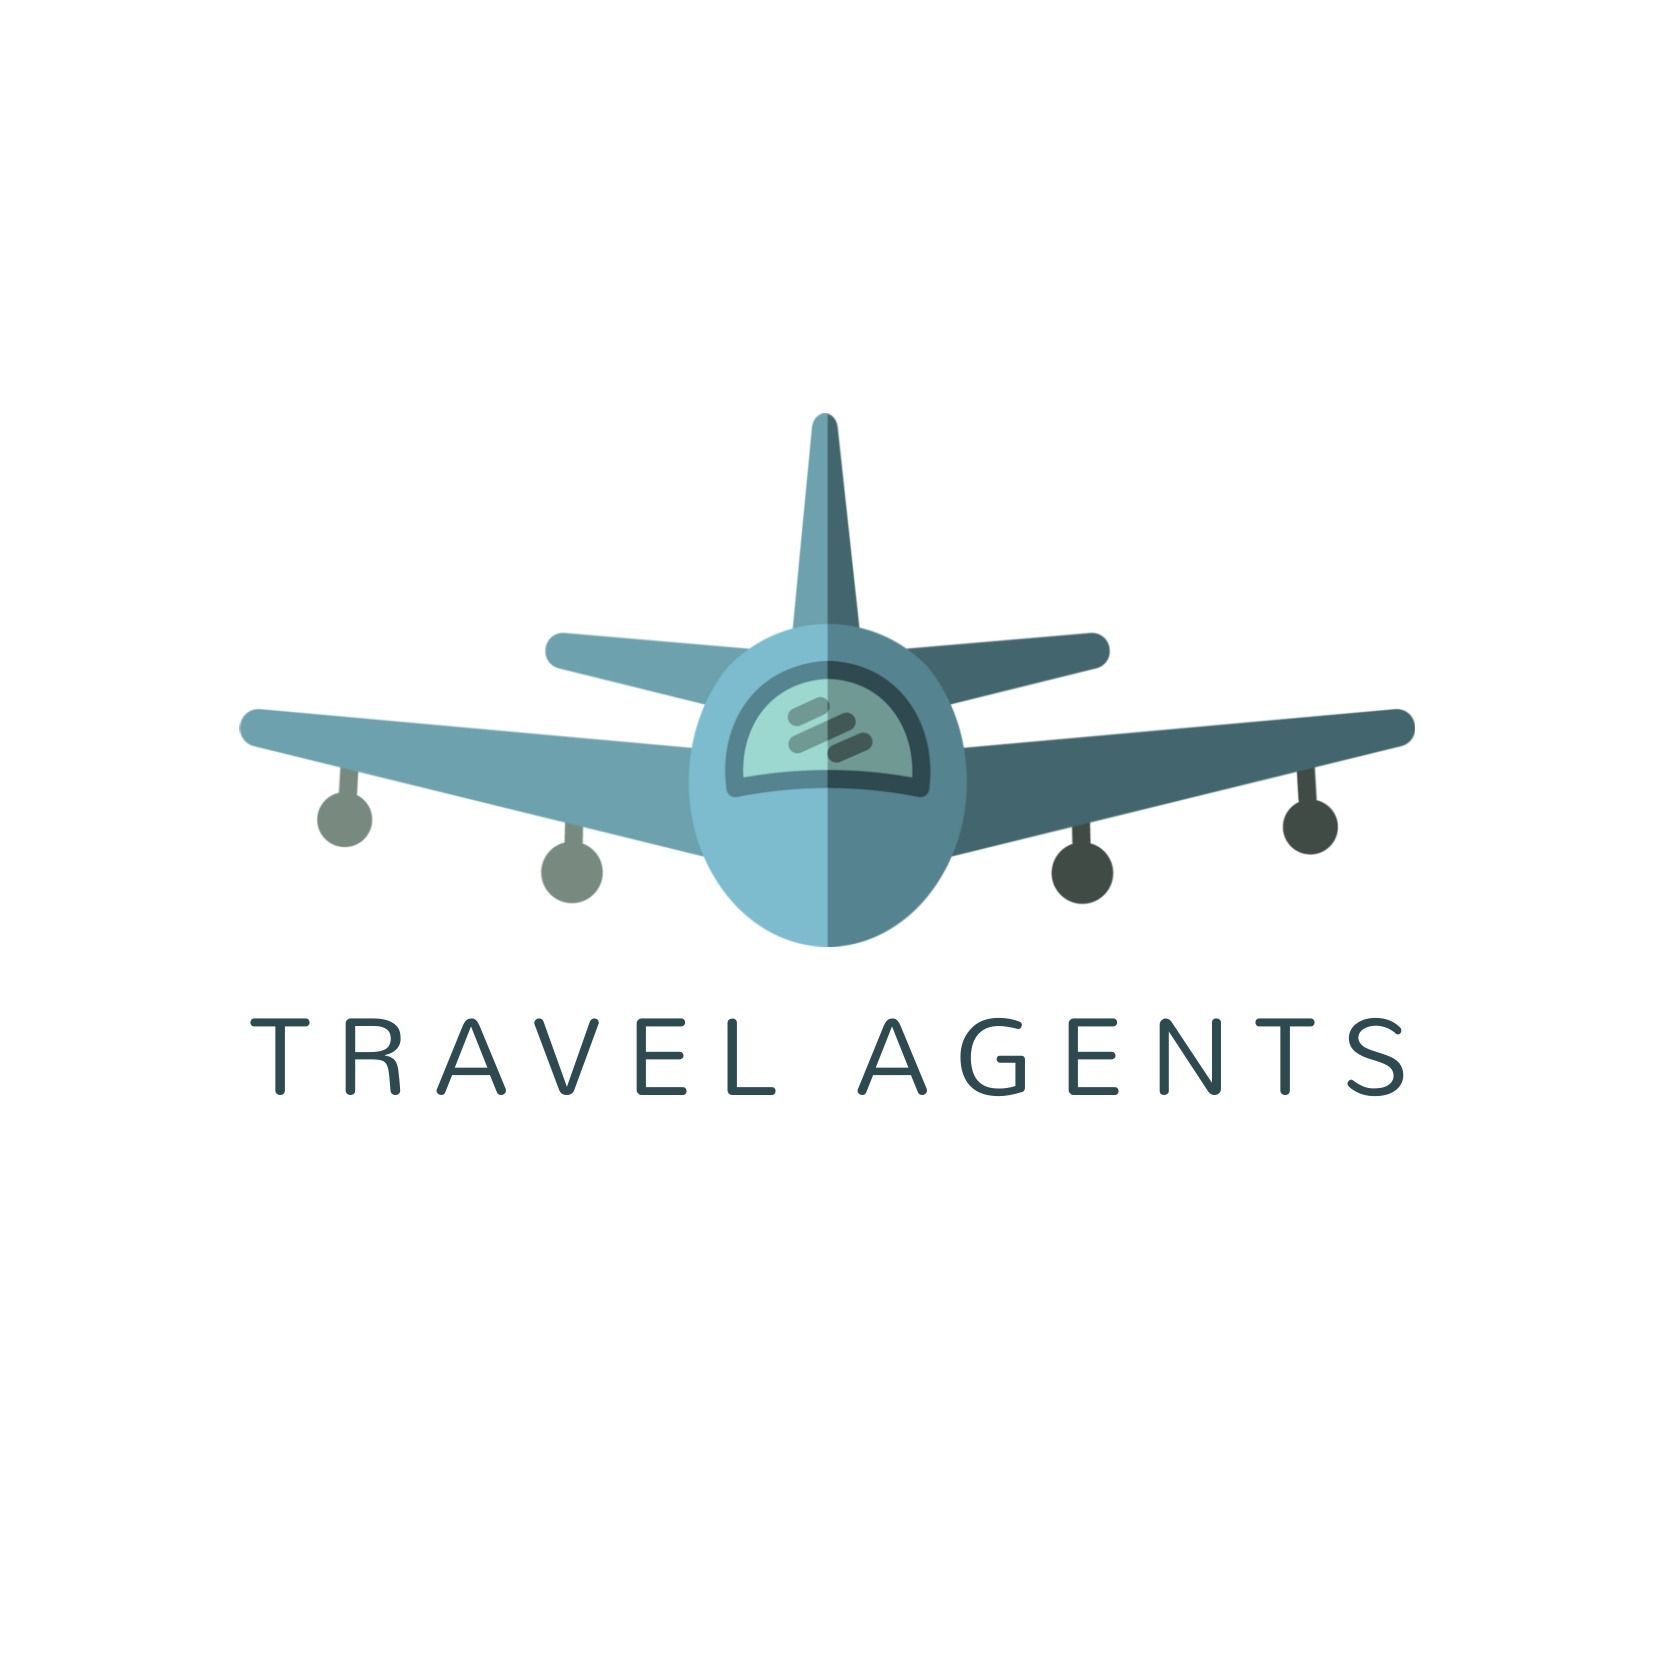 Logo d&#39;agence de voyages avec un avion face au spectateur - Mallanna est une police petite mais lisible et puissante - Image